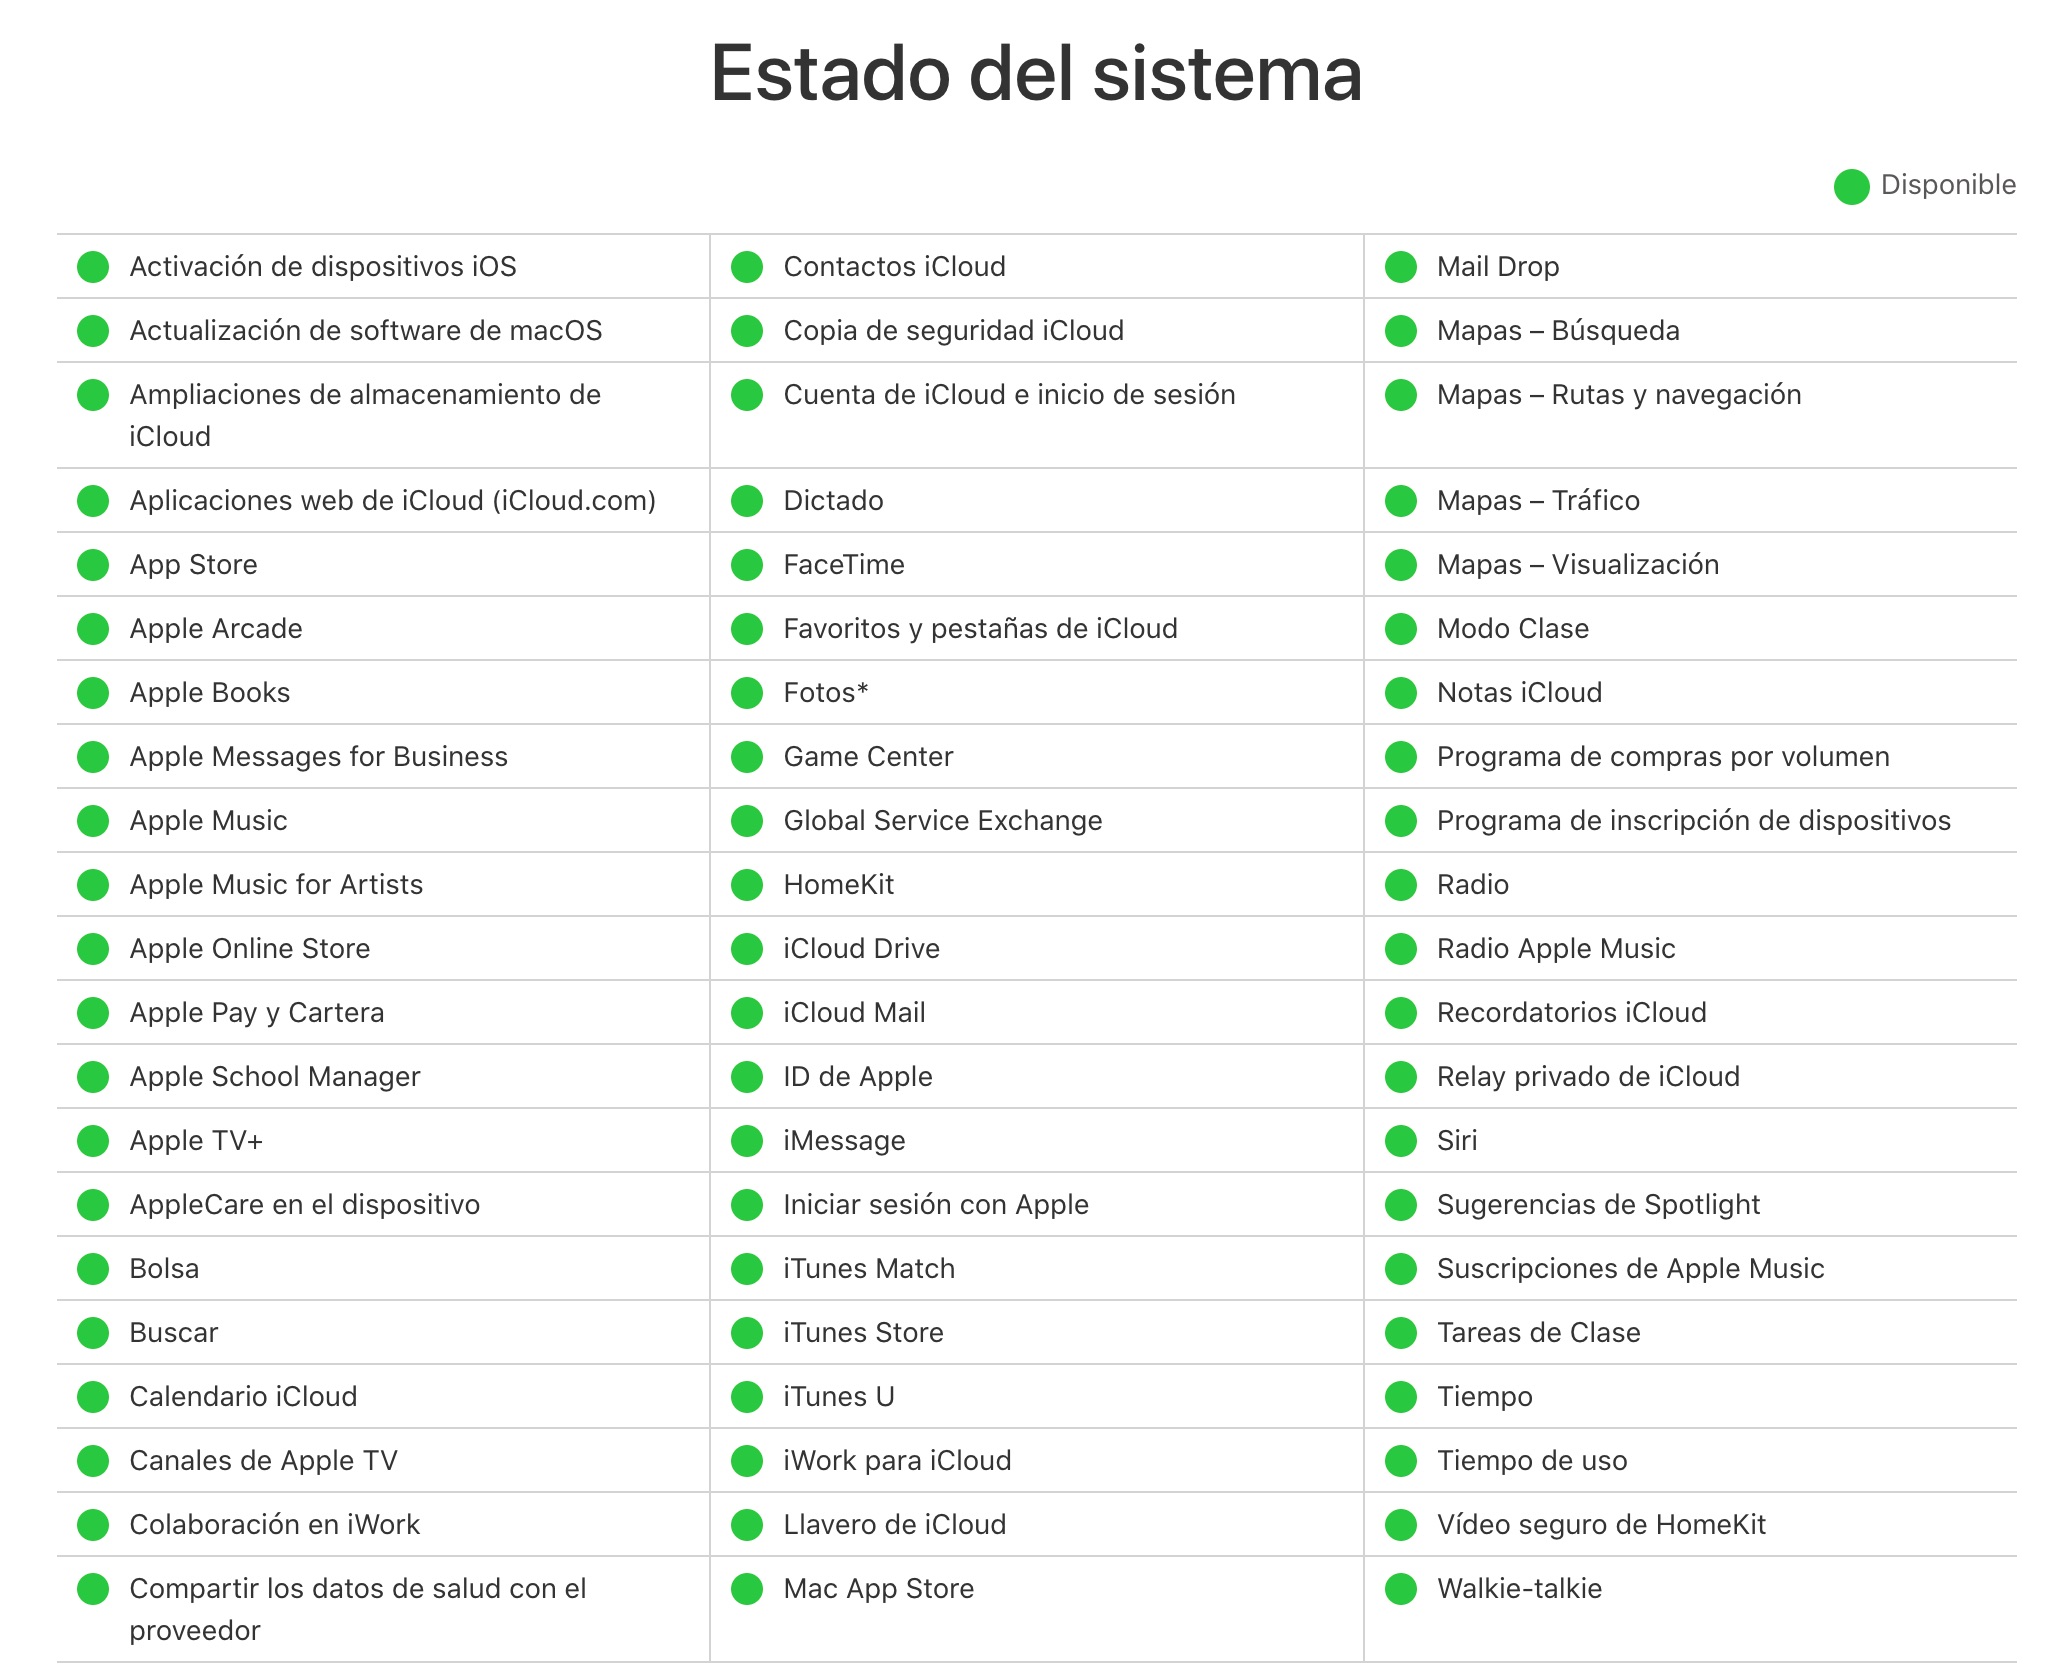 Todos los servidores de iCloud funcionando bien según Apple